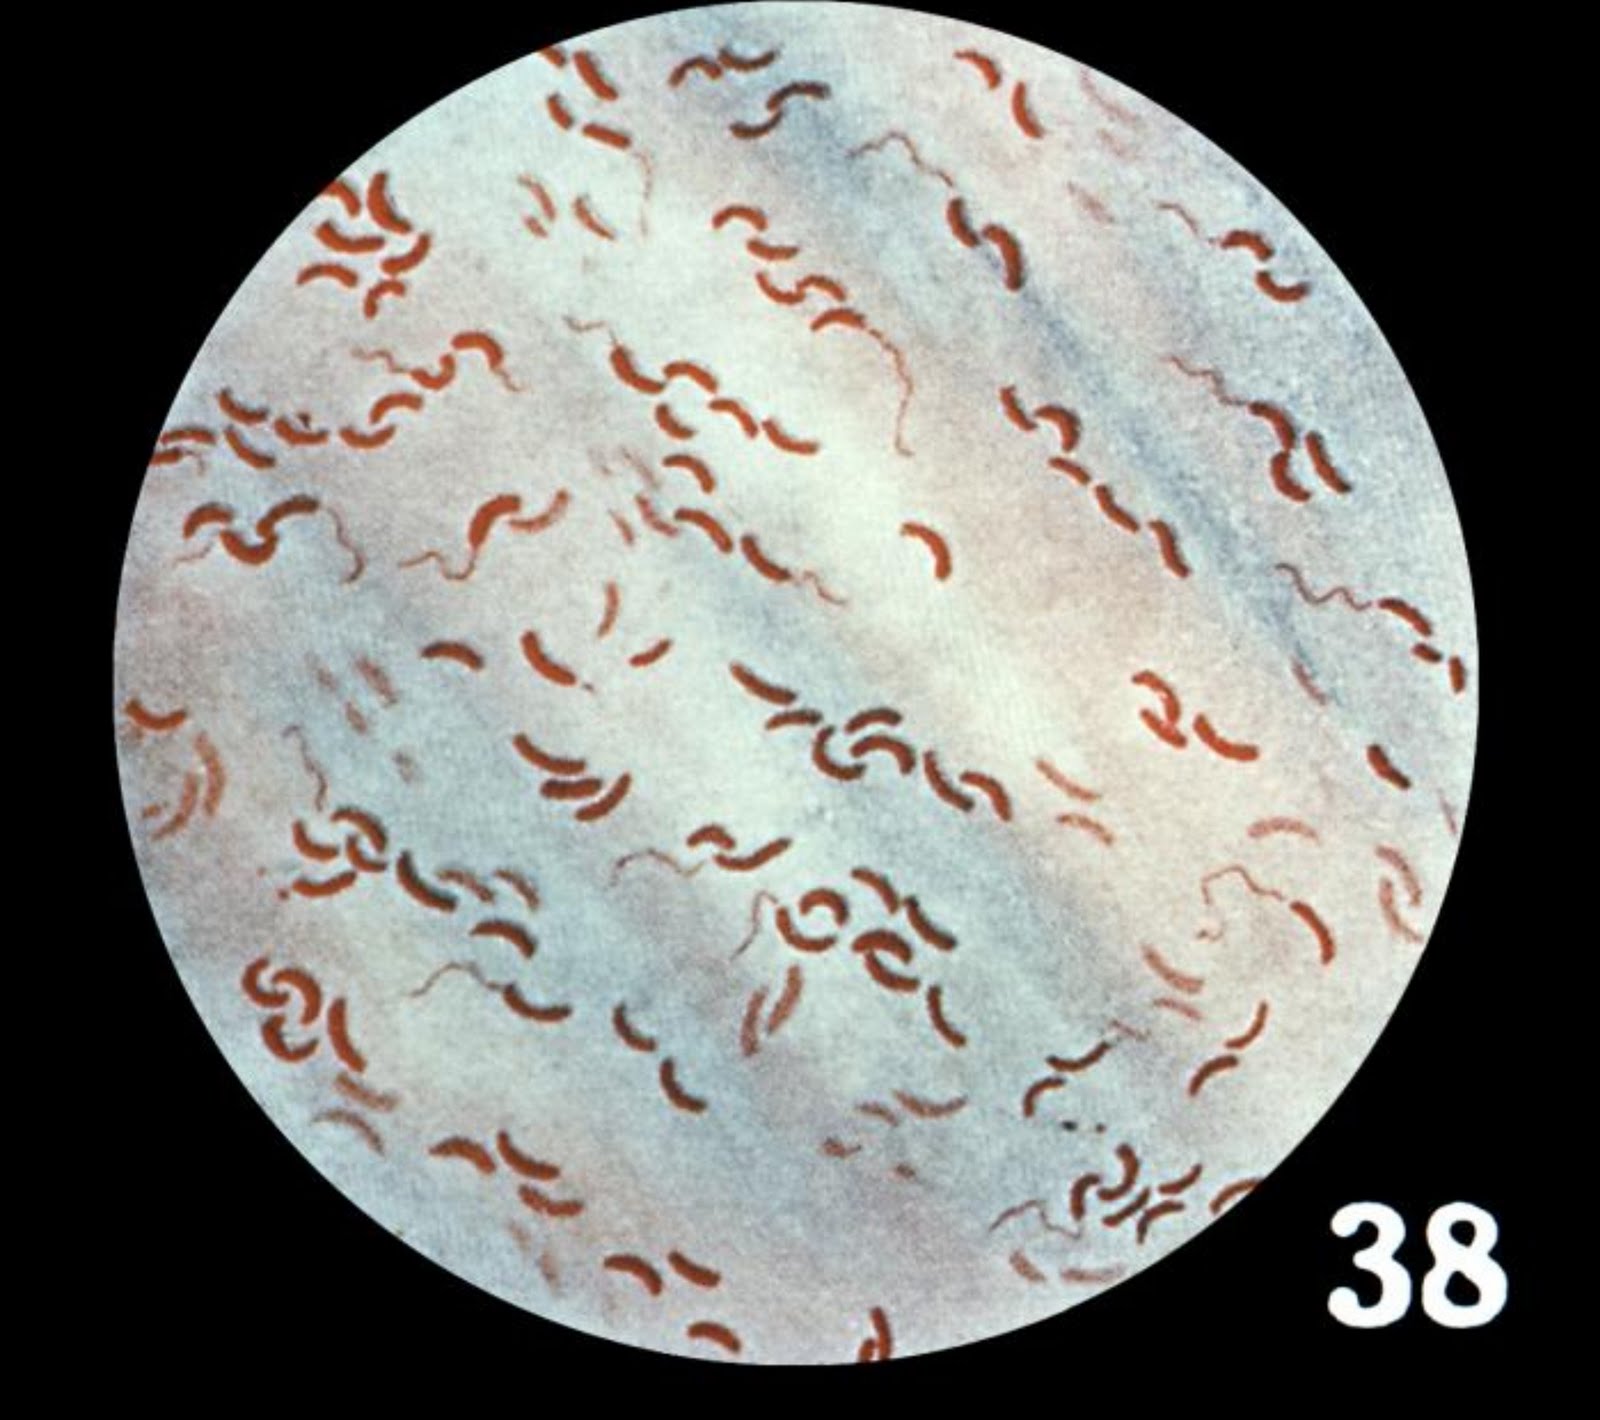 Трутовик окаймленный холерный вибрион. Холерный вибрион колонии. Холерный вибрион микробиология. Вибрион холеры под микроскопом.